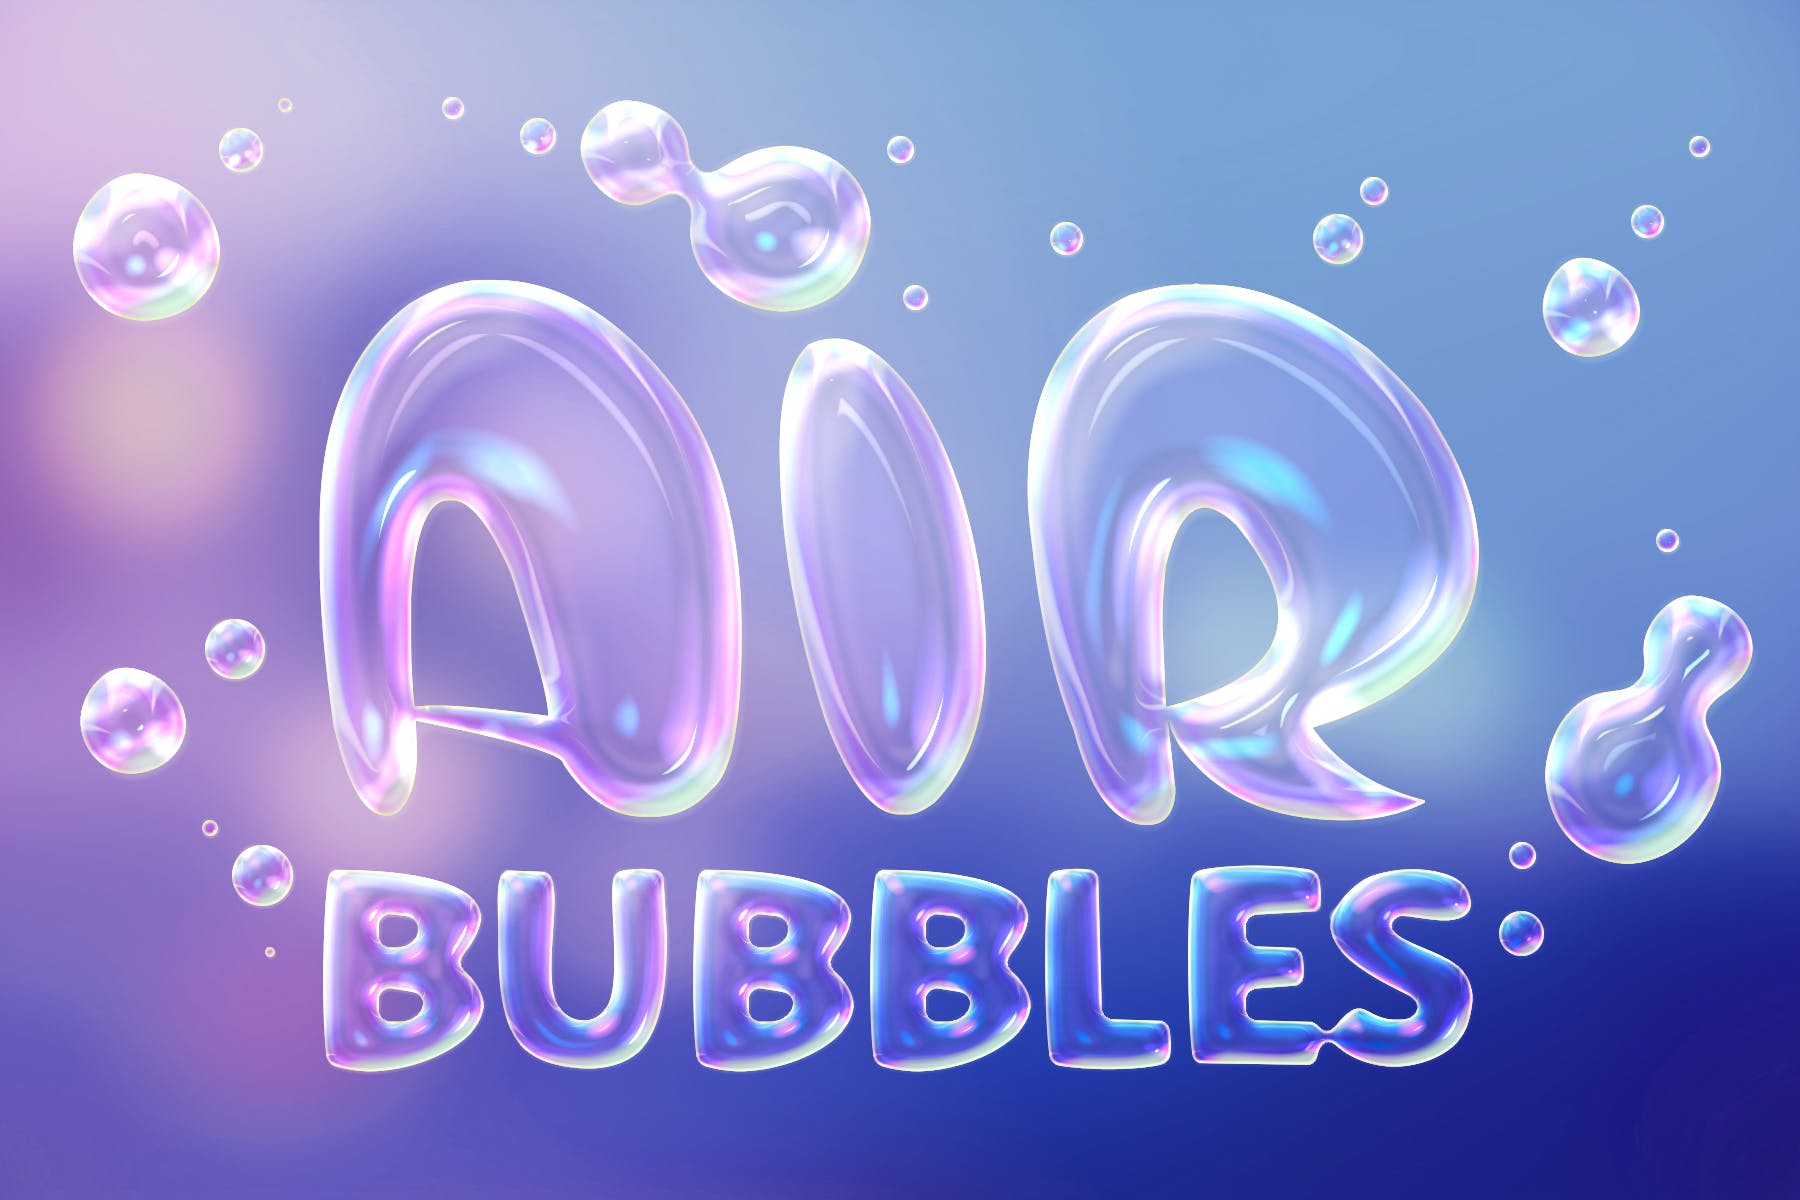 肥皂泡文字特效蚂蚁素材精选PS动作 Soap Bubbles Photoshop Action插图(4)